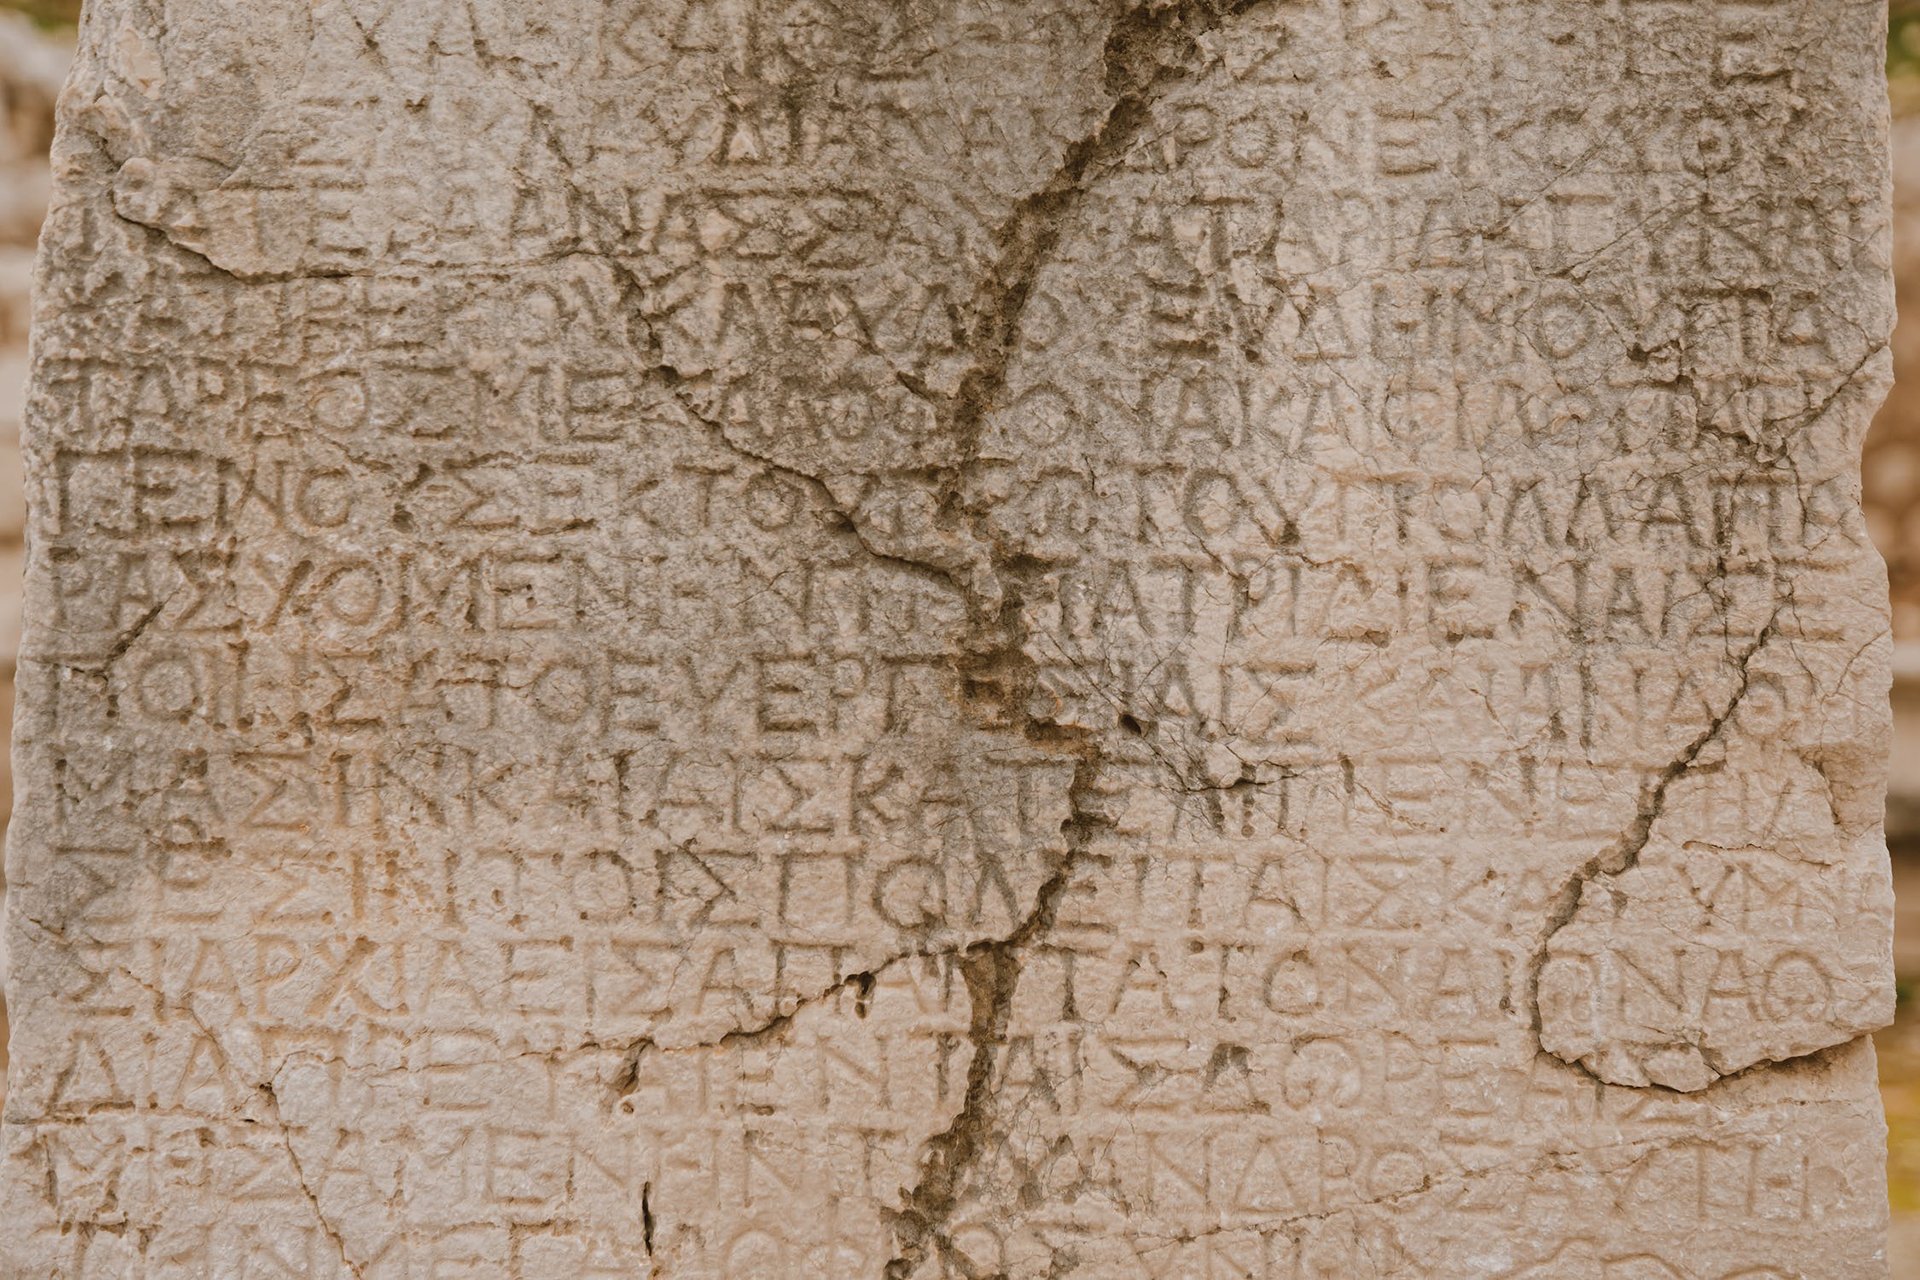 Beispiel für Lapidarschrift auf einer Steintafel